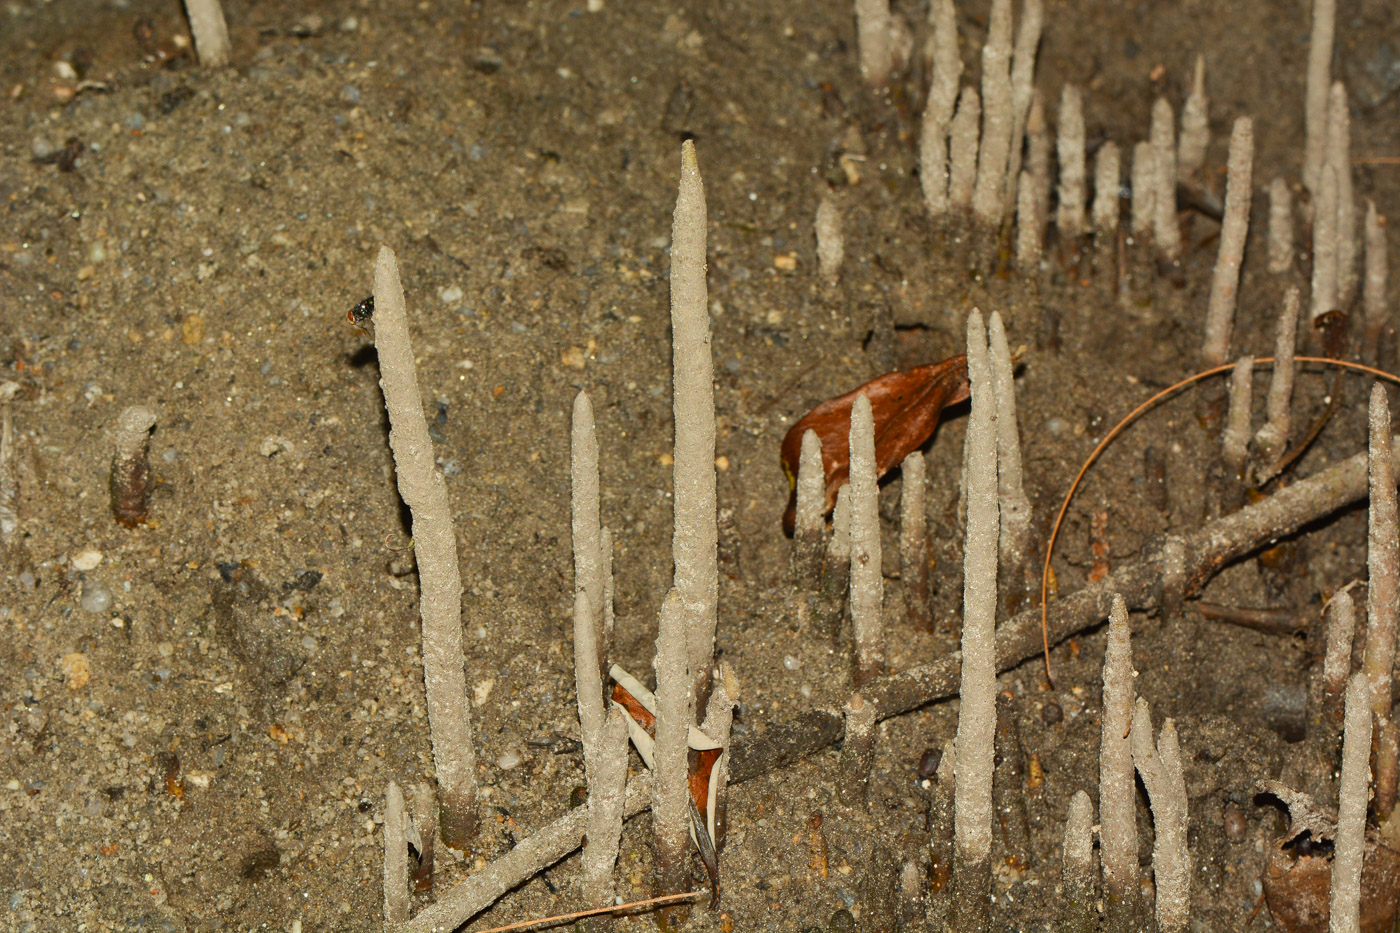 Image of genus Rhizophora specimen.